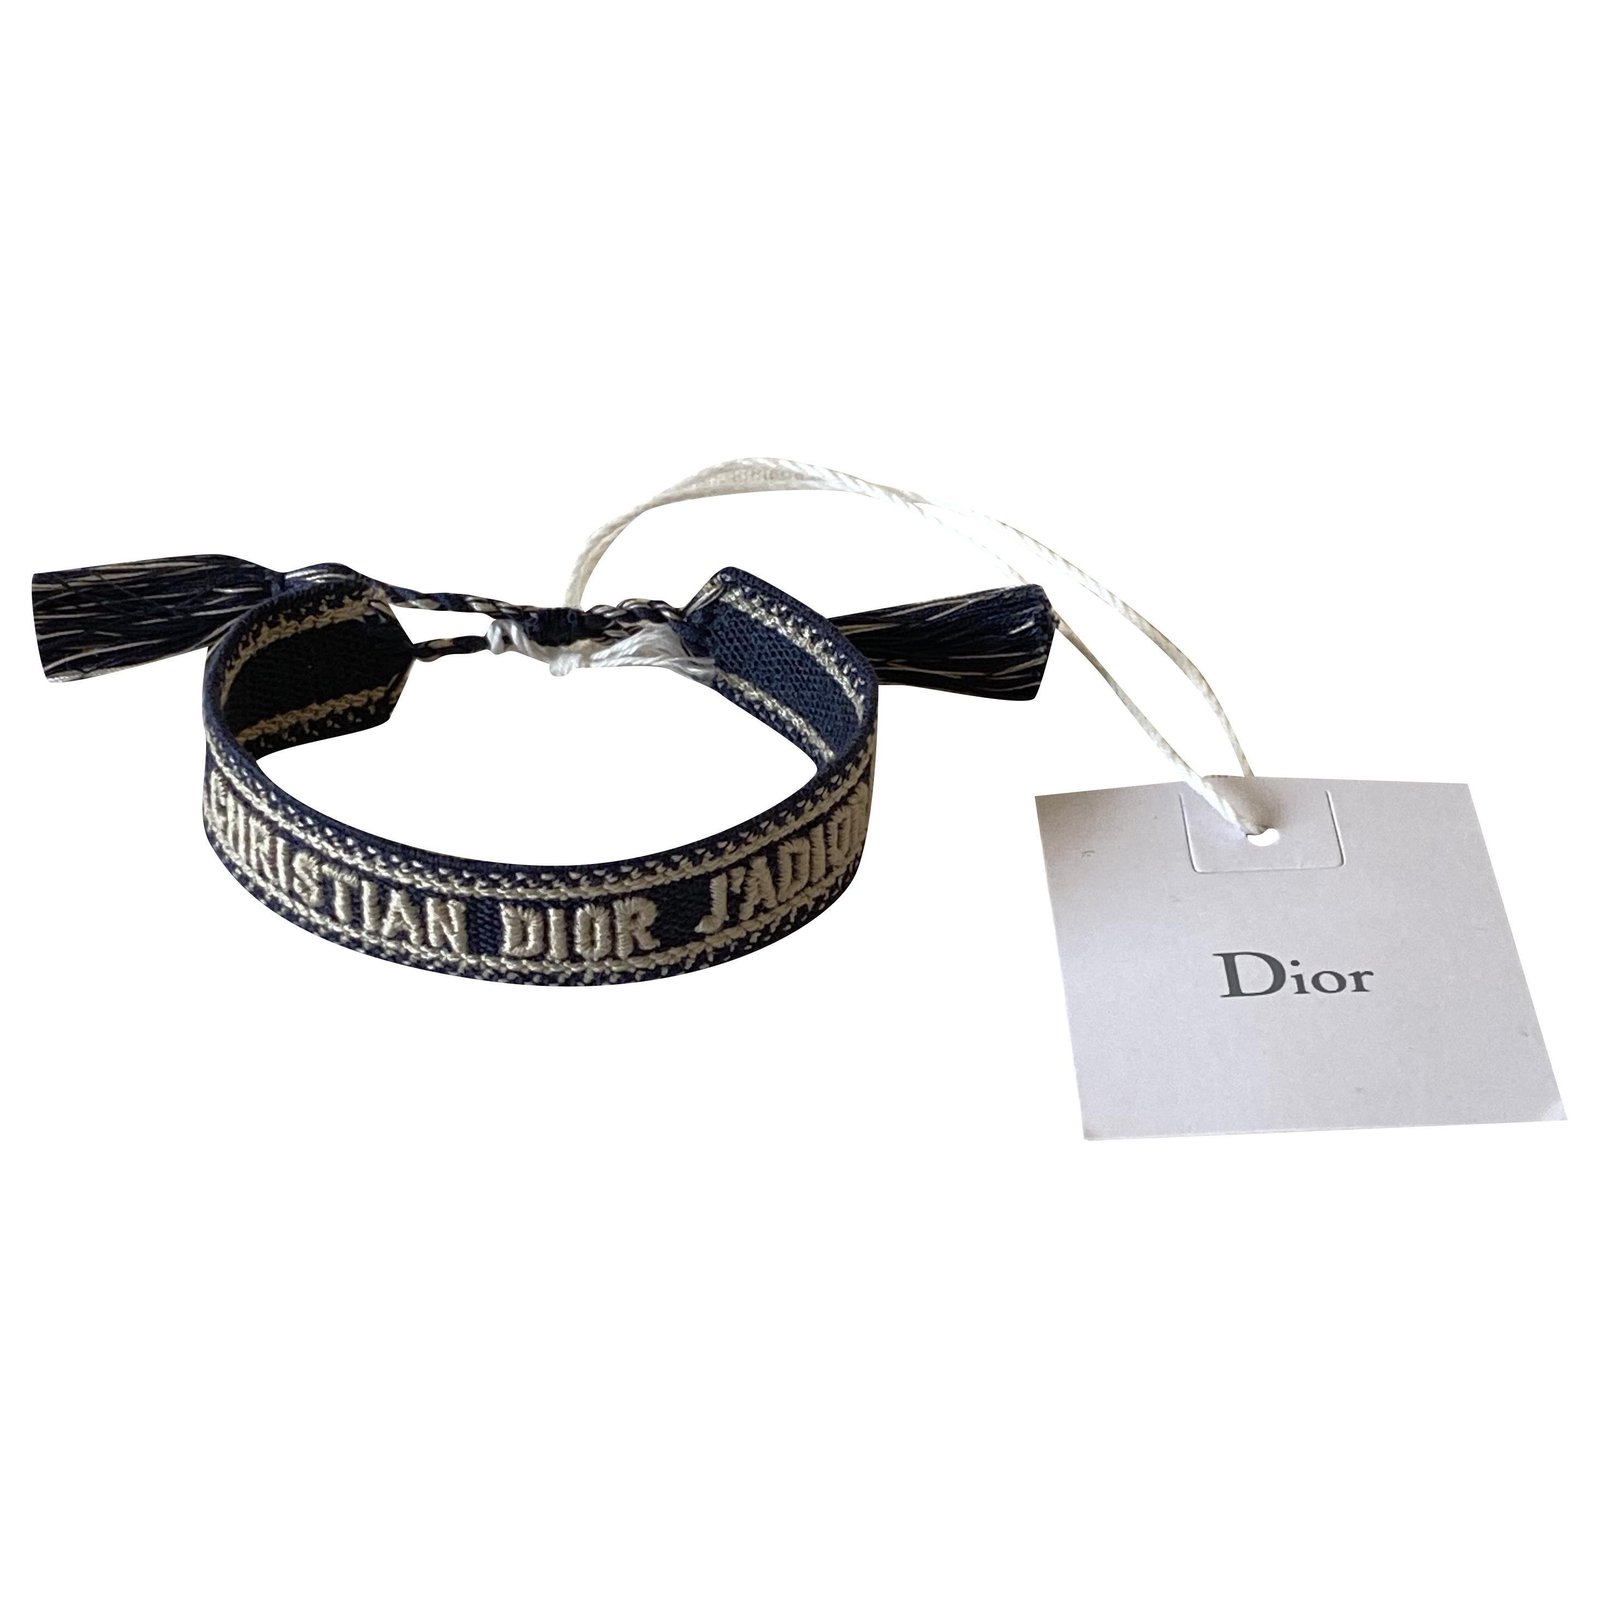 Christian Dior bracelet – Les Merveilles De Babellou